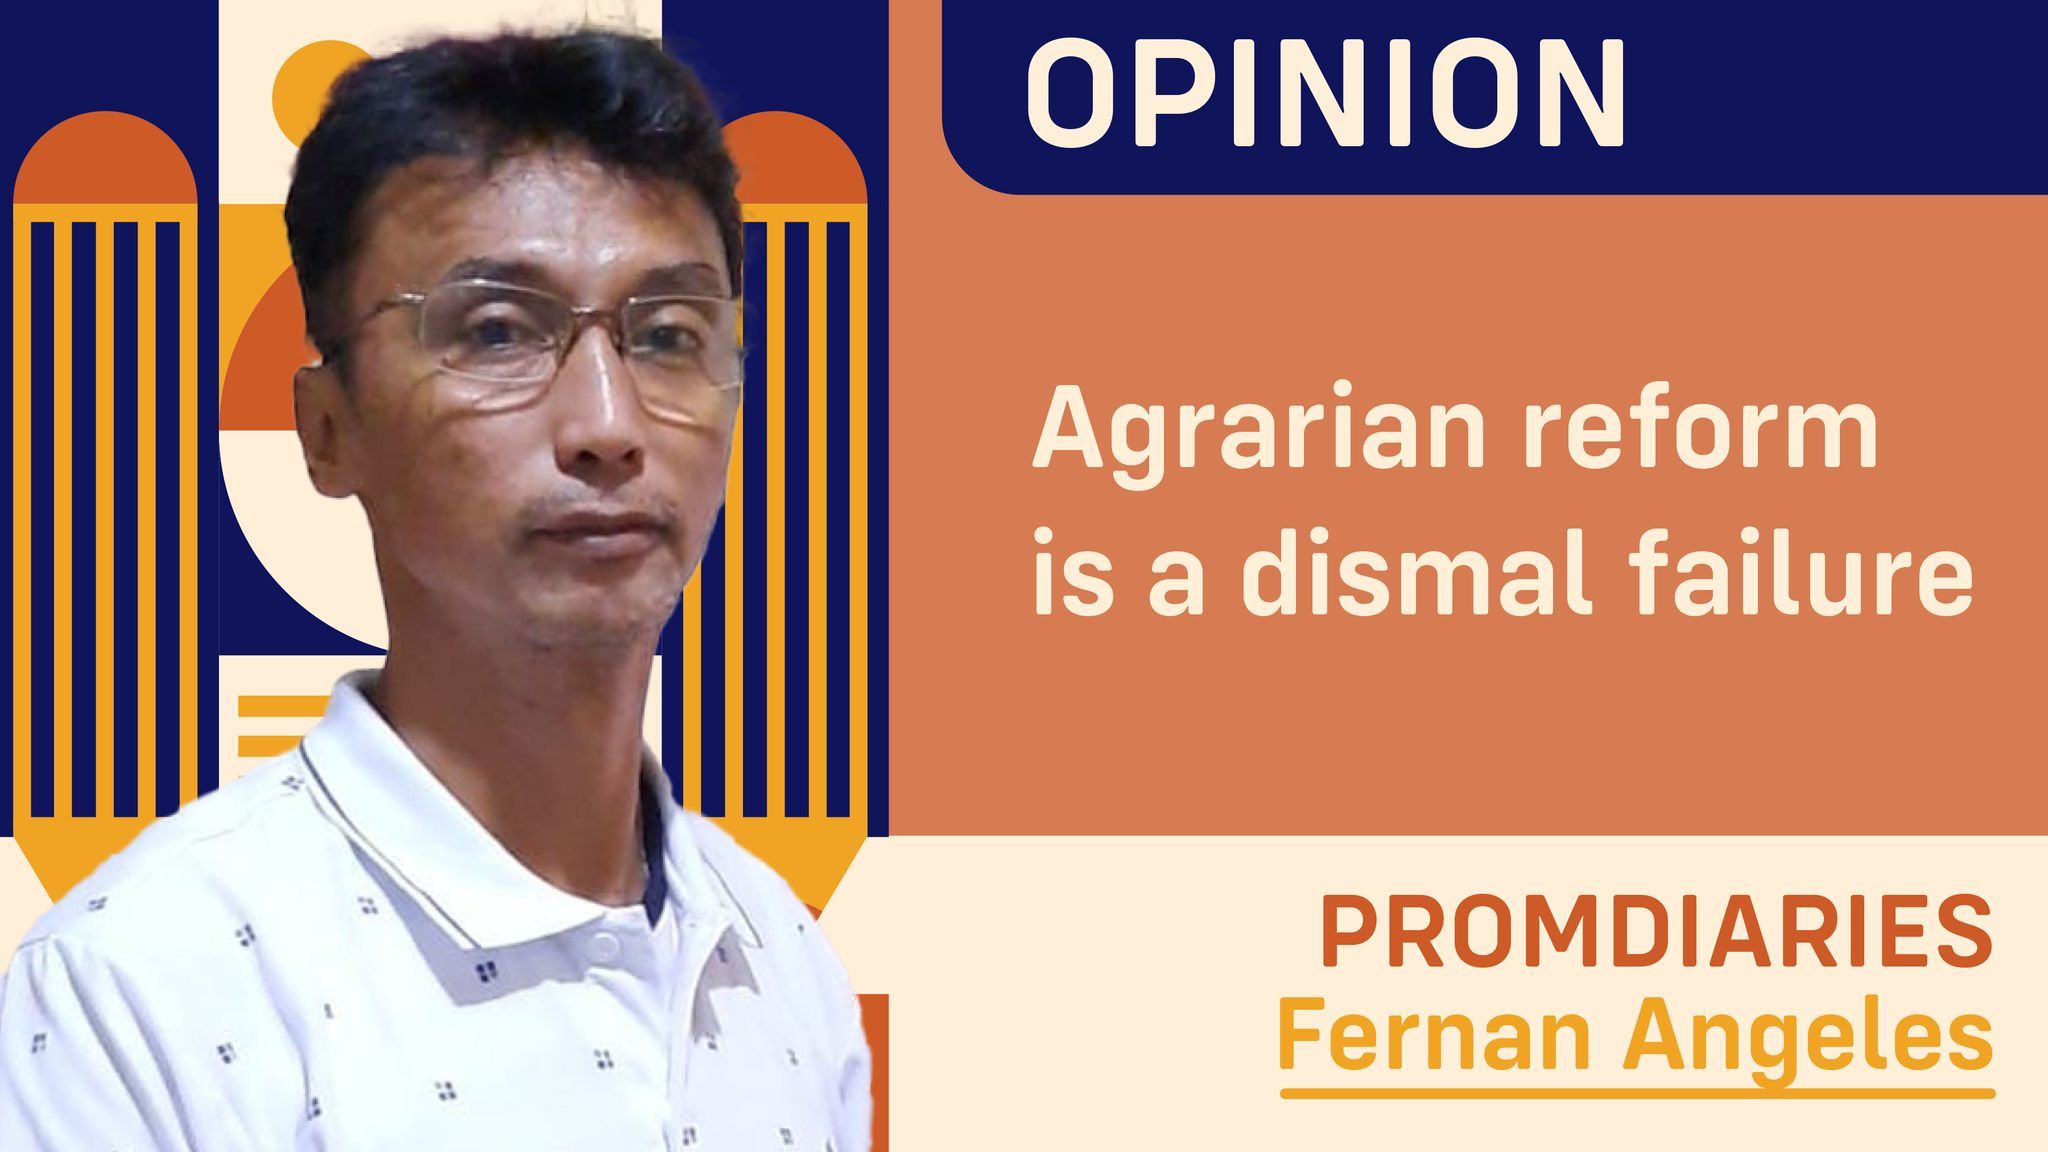 Agrarian reform is a dismal failure